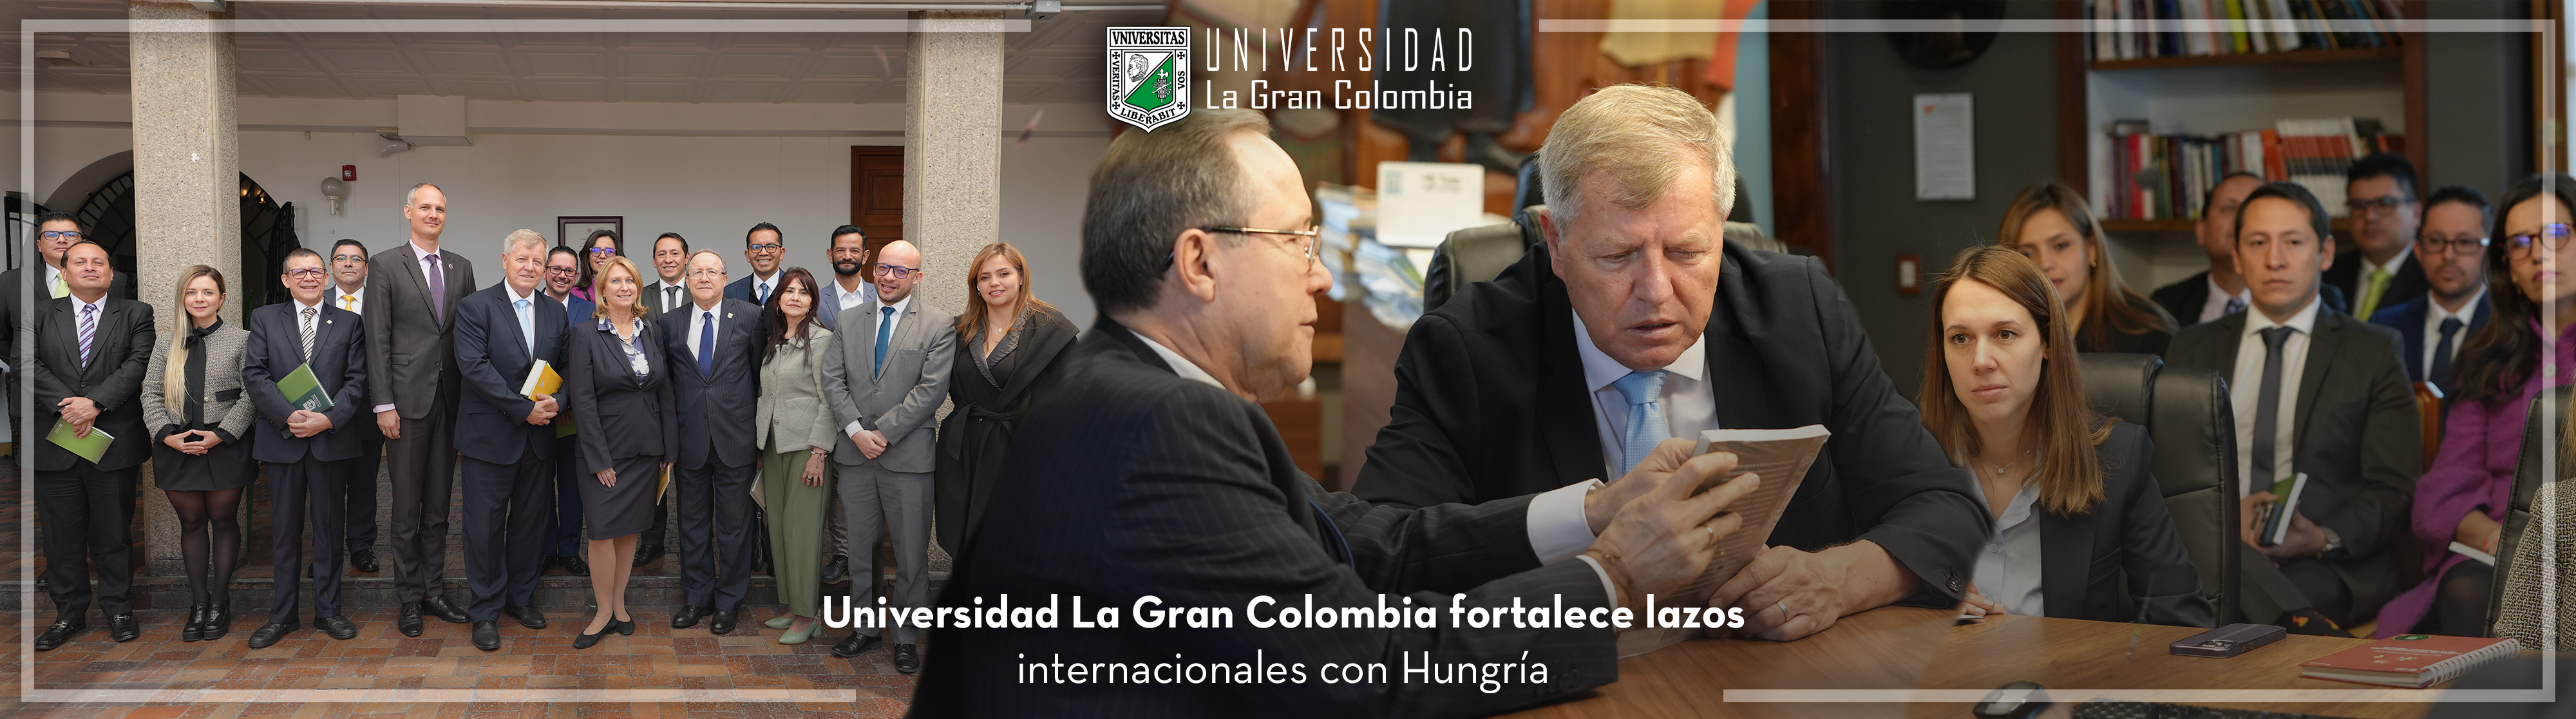 Universidad La Gran Colombia fortalece lazos internacionales con Hungría